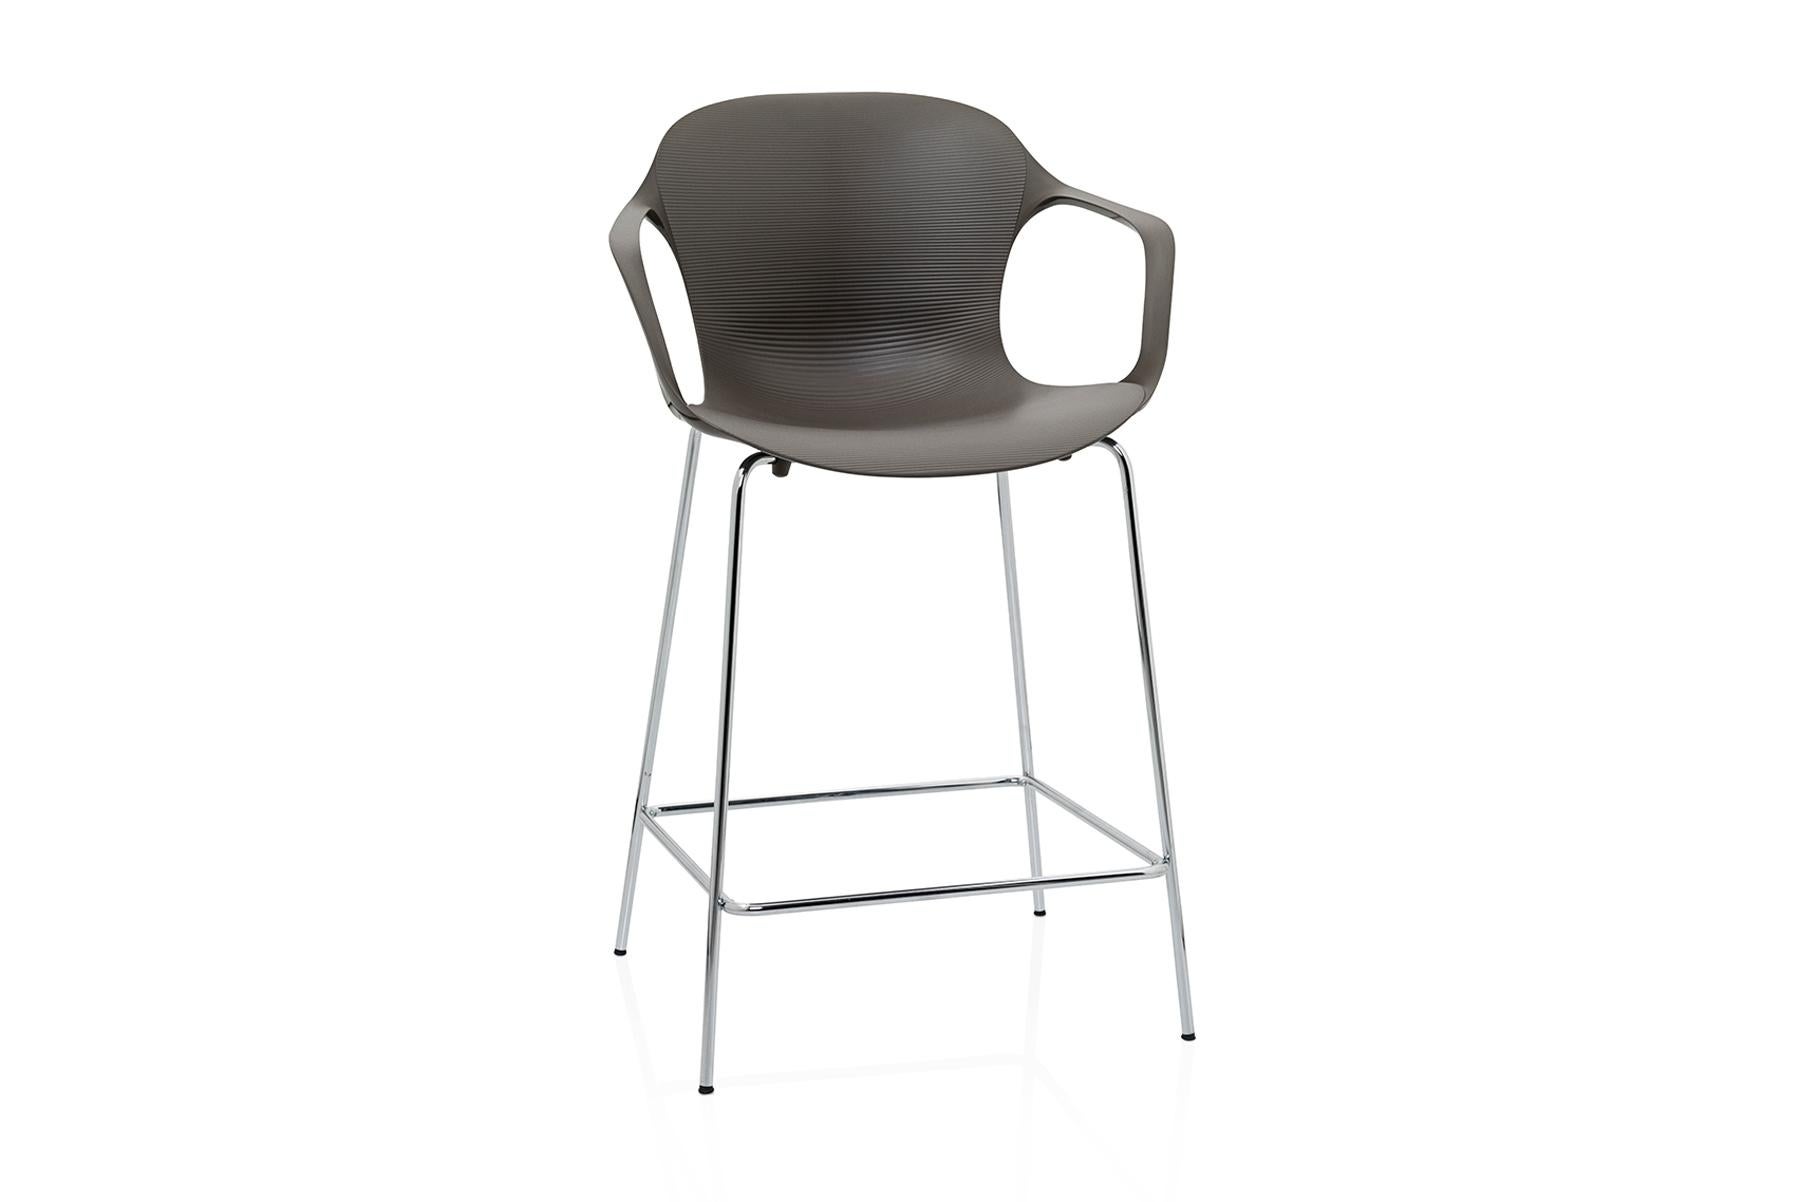 Kasper Salto a conçu la chaise NAP pour Fritz Hansen. Avec sa forme curviligne, la chaise NAP est féminine et élégante. Les contours de la coque en nylon s'adaptent naturellement à la forme du corps humain et les vagues texturées transforment les